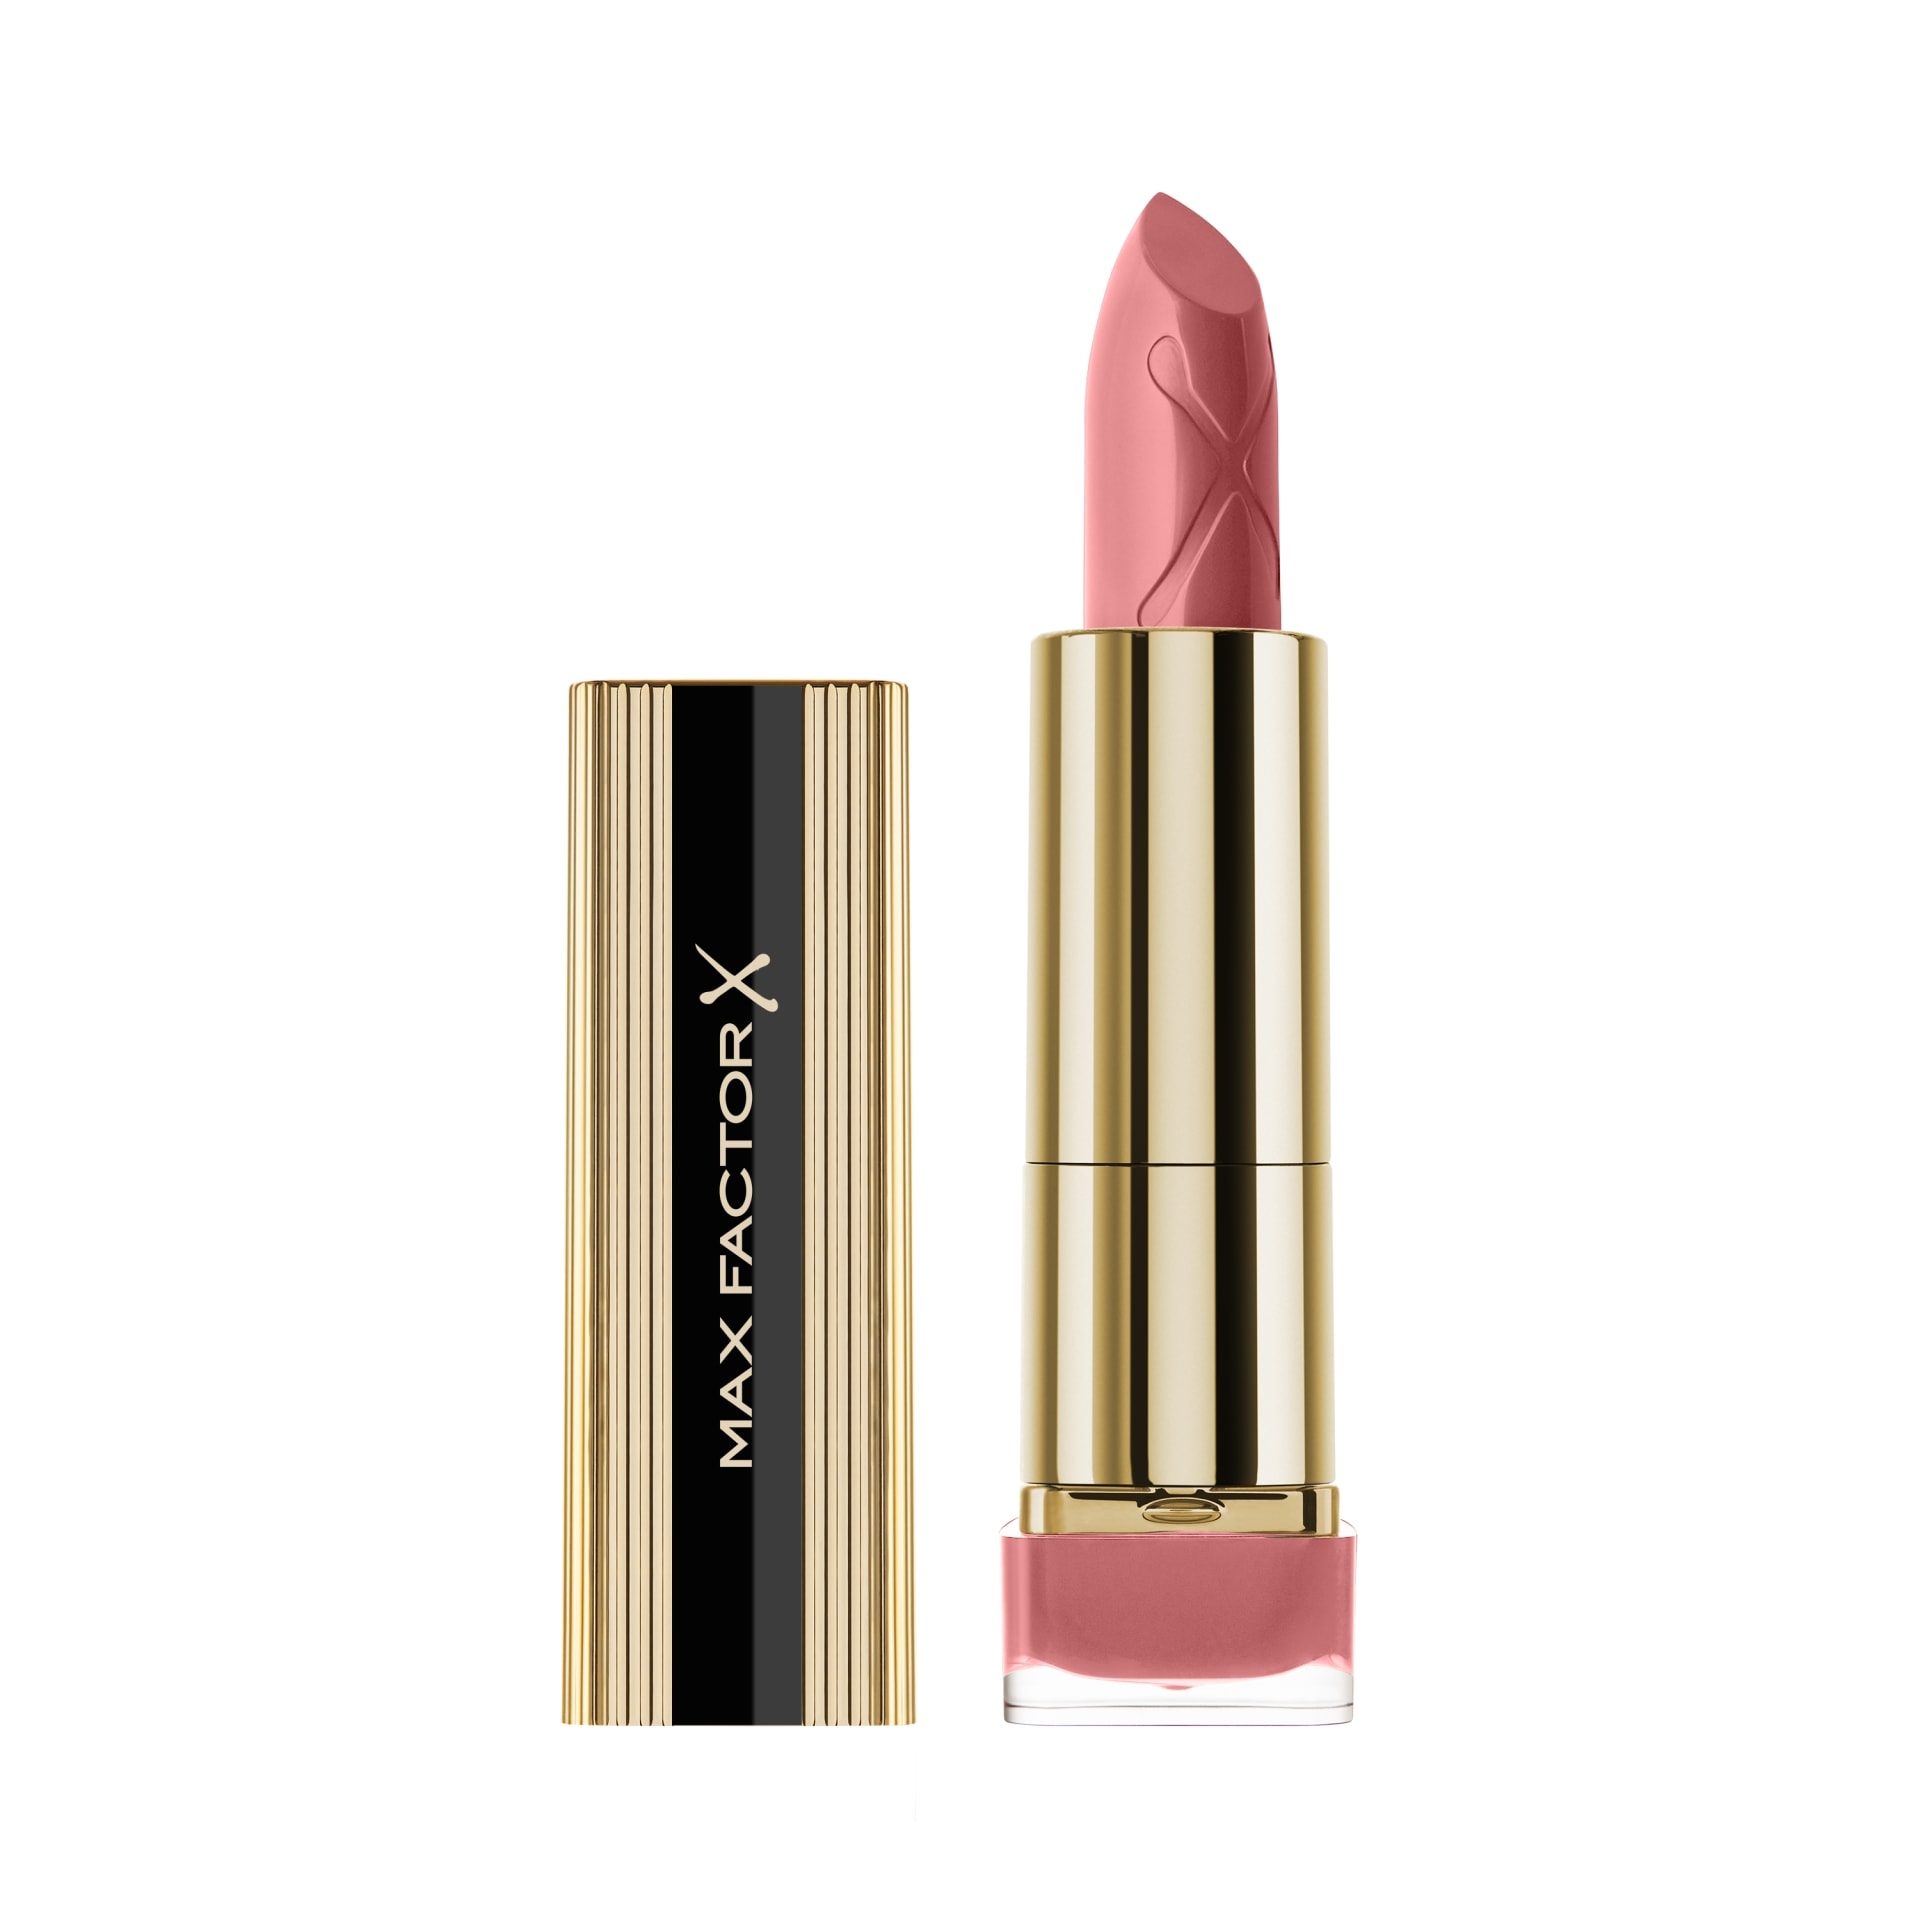 Lips - Lipstick, Lip Gloss & more | Max Factor | Max Factor